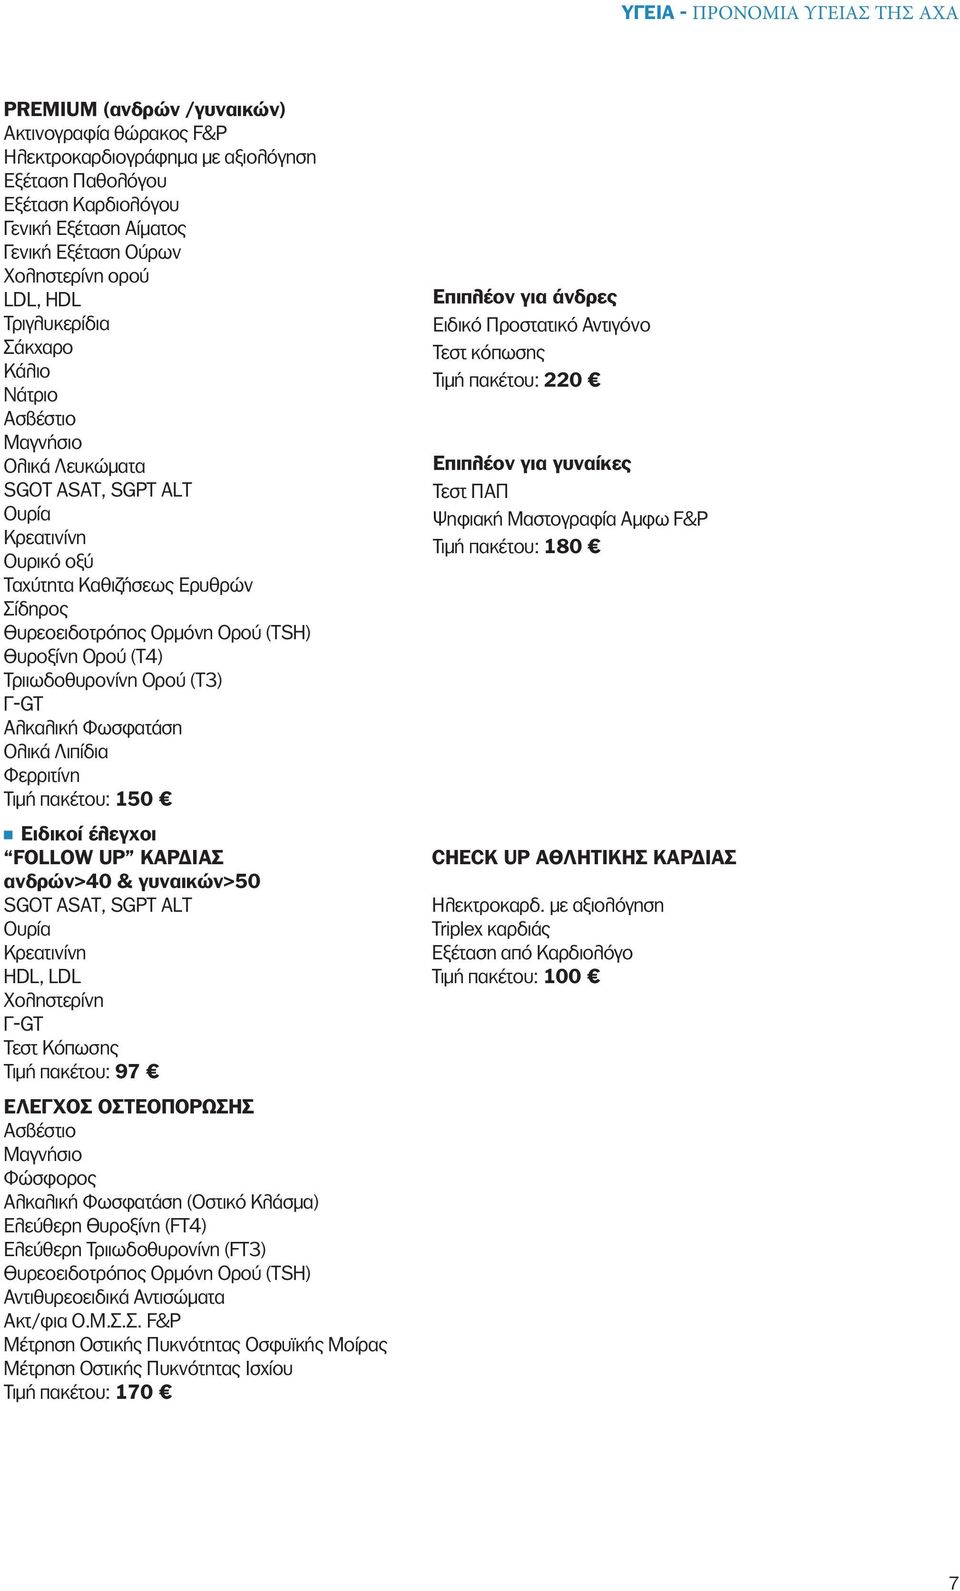 Θυρεοειδοτρόπος Ορμόνη Ορού (TSH) Θυροξίνη Ορού (Τ4) Τριιωδοθυρονίνη Ορού (T3) Γ-GT Αλκαλική Φωσφατάση Ολικά Λιπίδια Φερριτίνη Τιμή πακέτου: 150 Ειδικοί έλεγχοι FOLLOW UP ΚΑΡΔΙΑΣ ανδρών>40 &